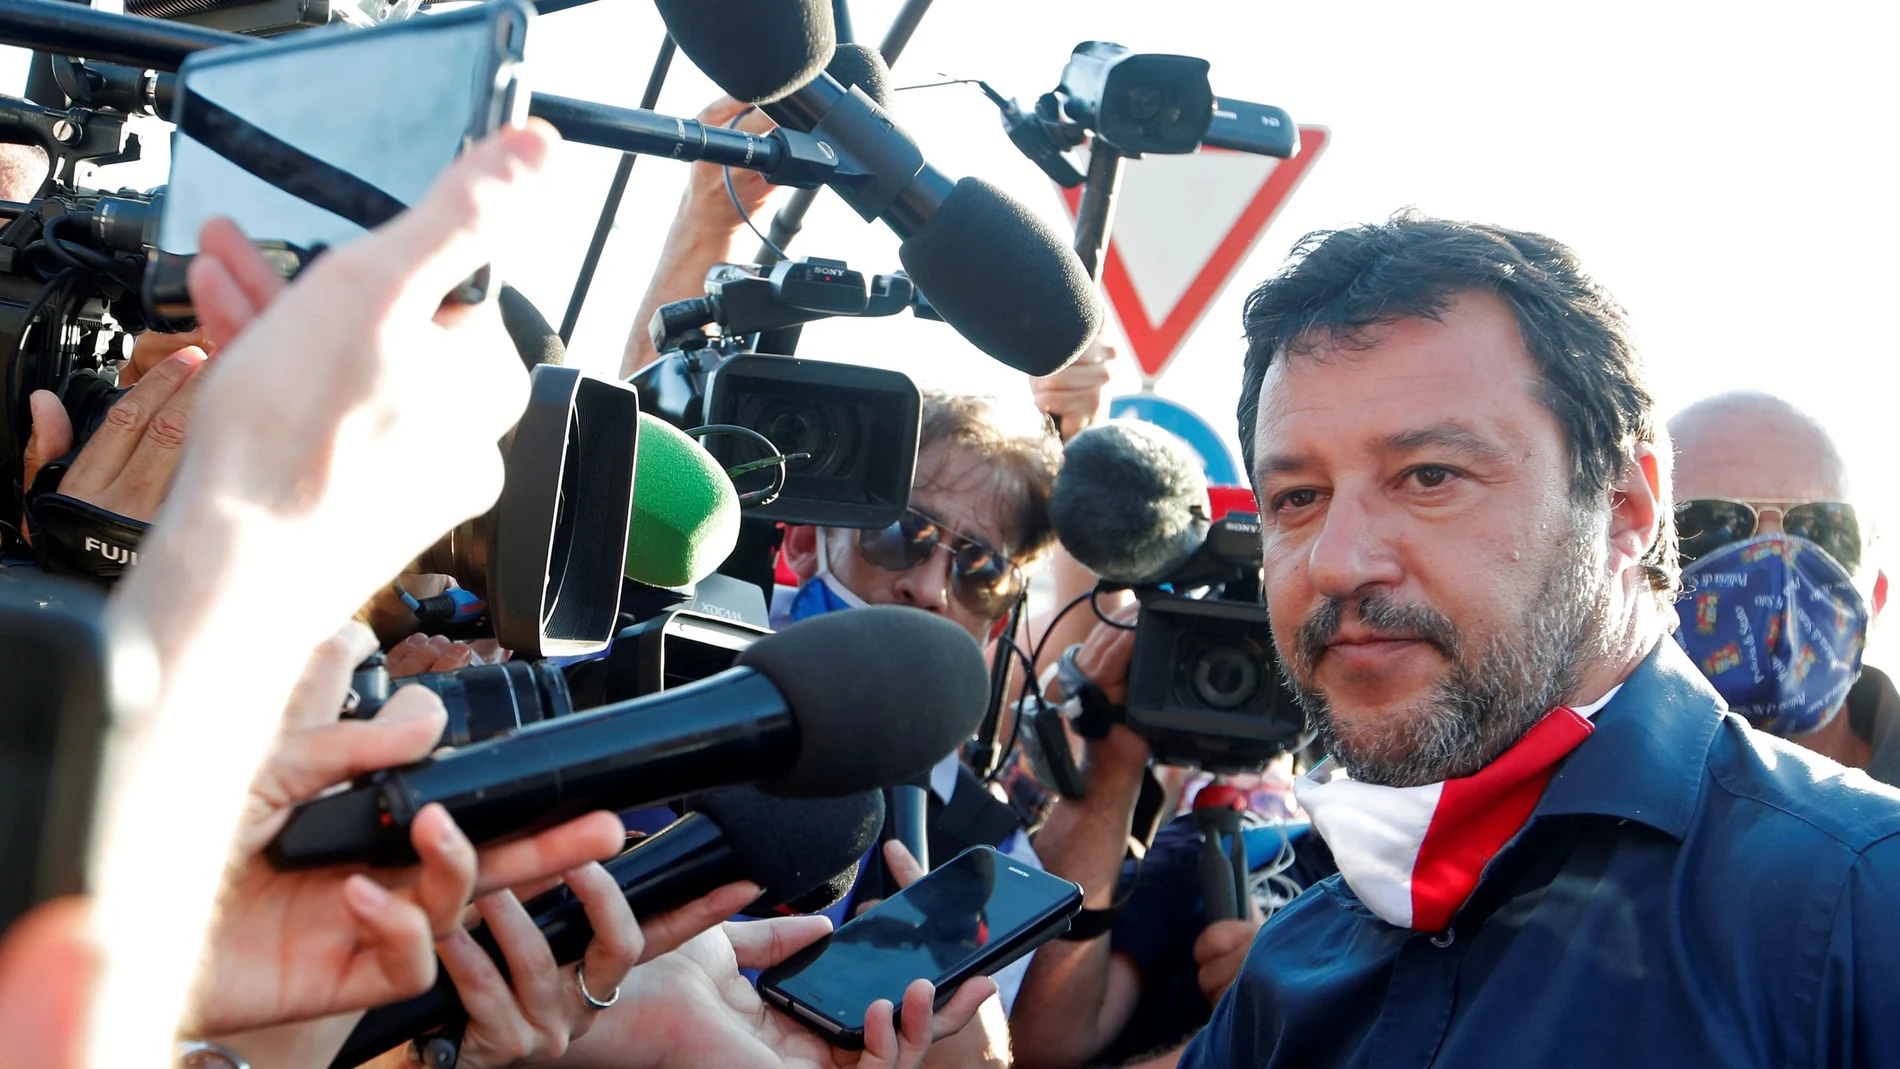 El líder de la Liga, Matteo Salvini, fue recibido ayer entre aplausos y pitidos por la población del sur de Italia